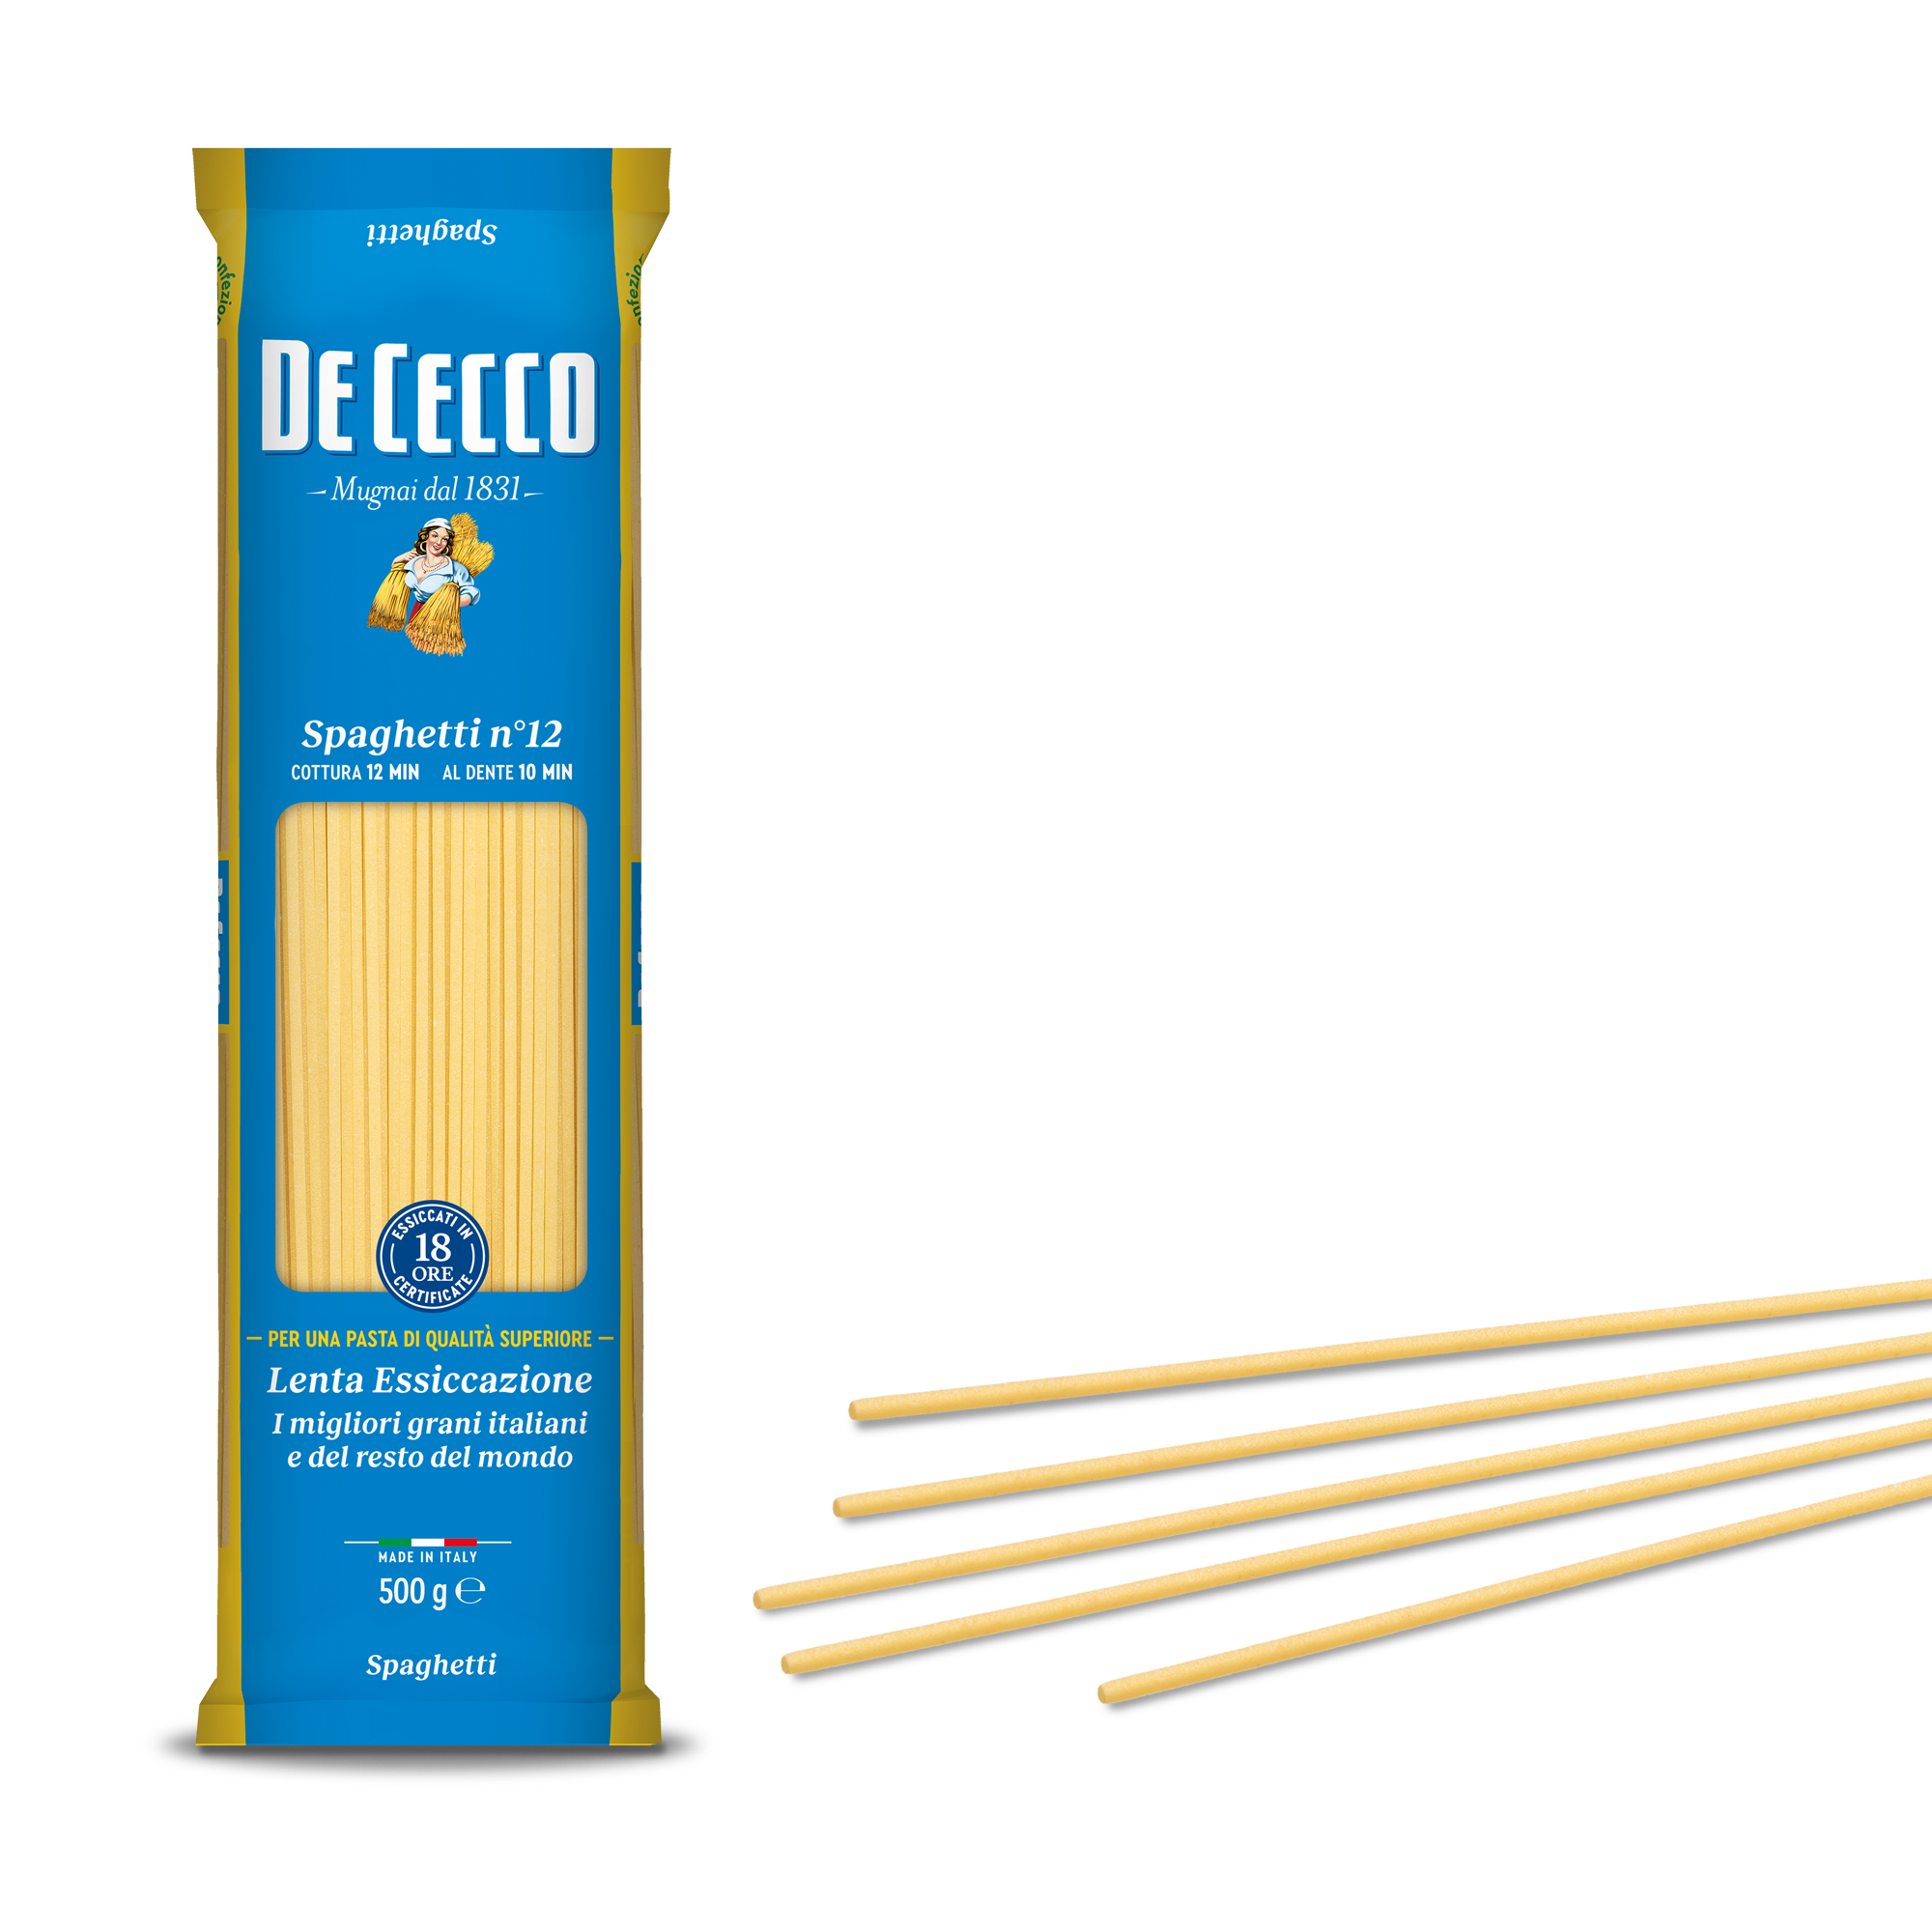 De Cecco Spaghetti n°12 500g